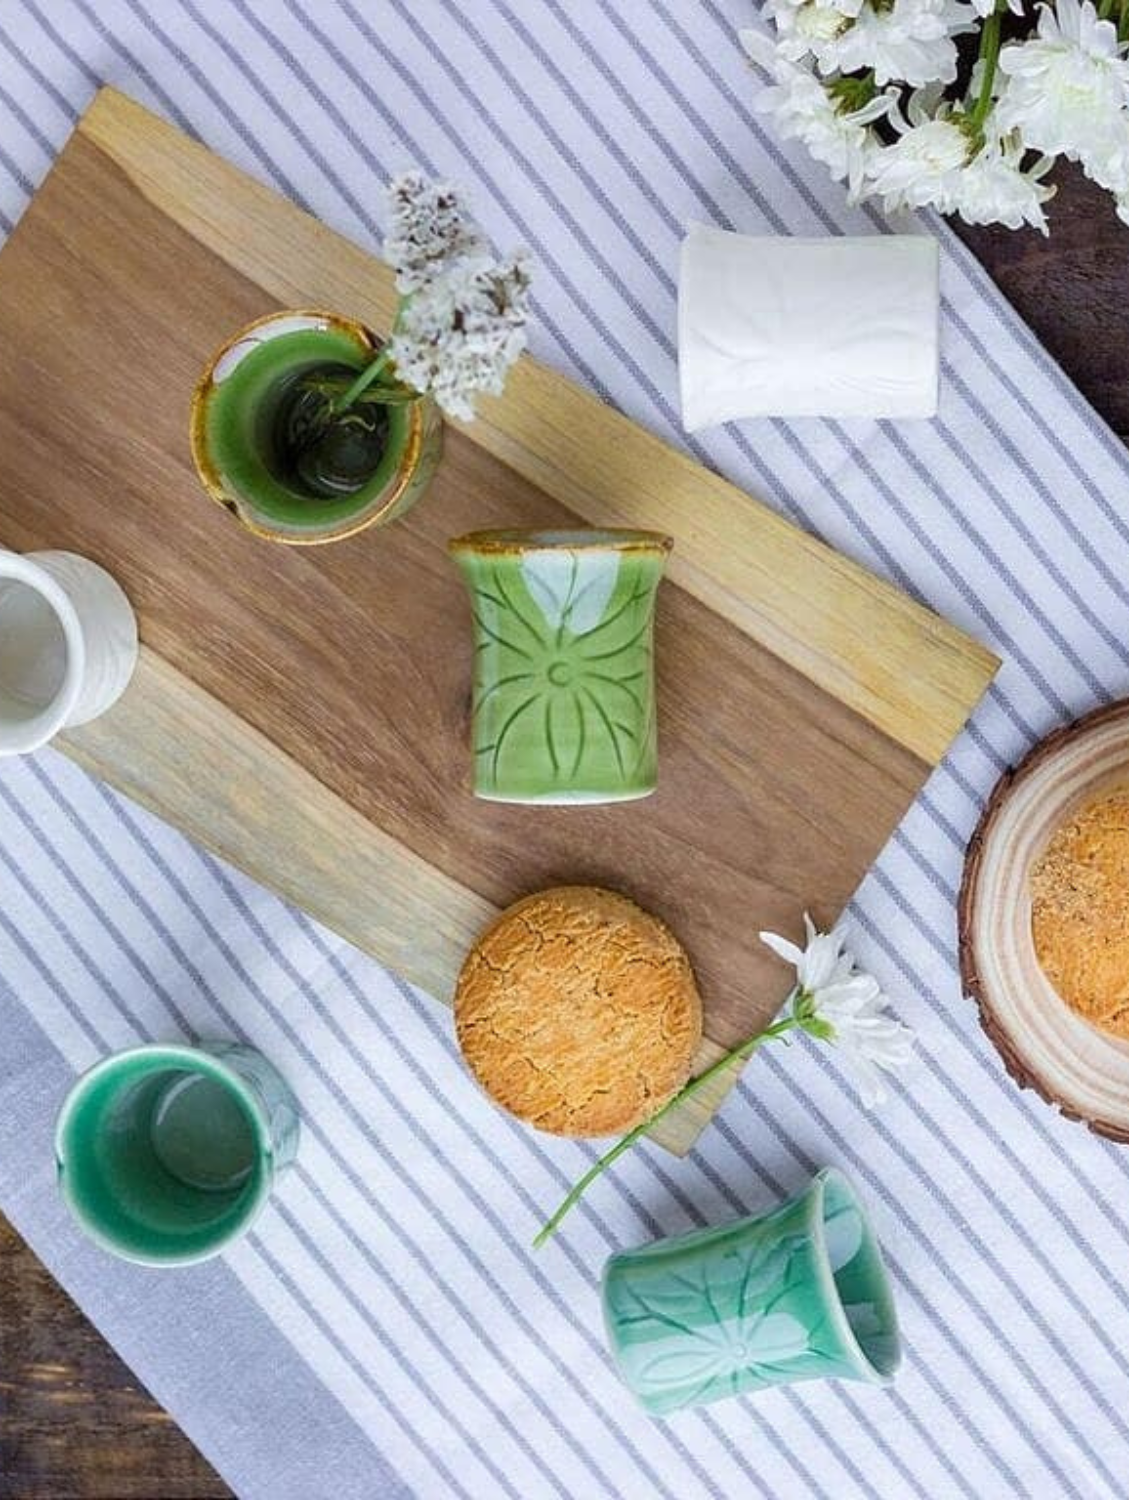 GREEN Tea Set With Wooden Platter